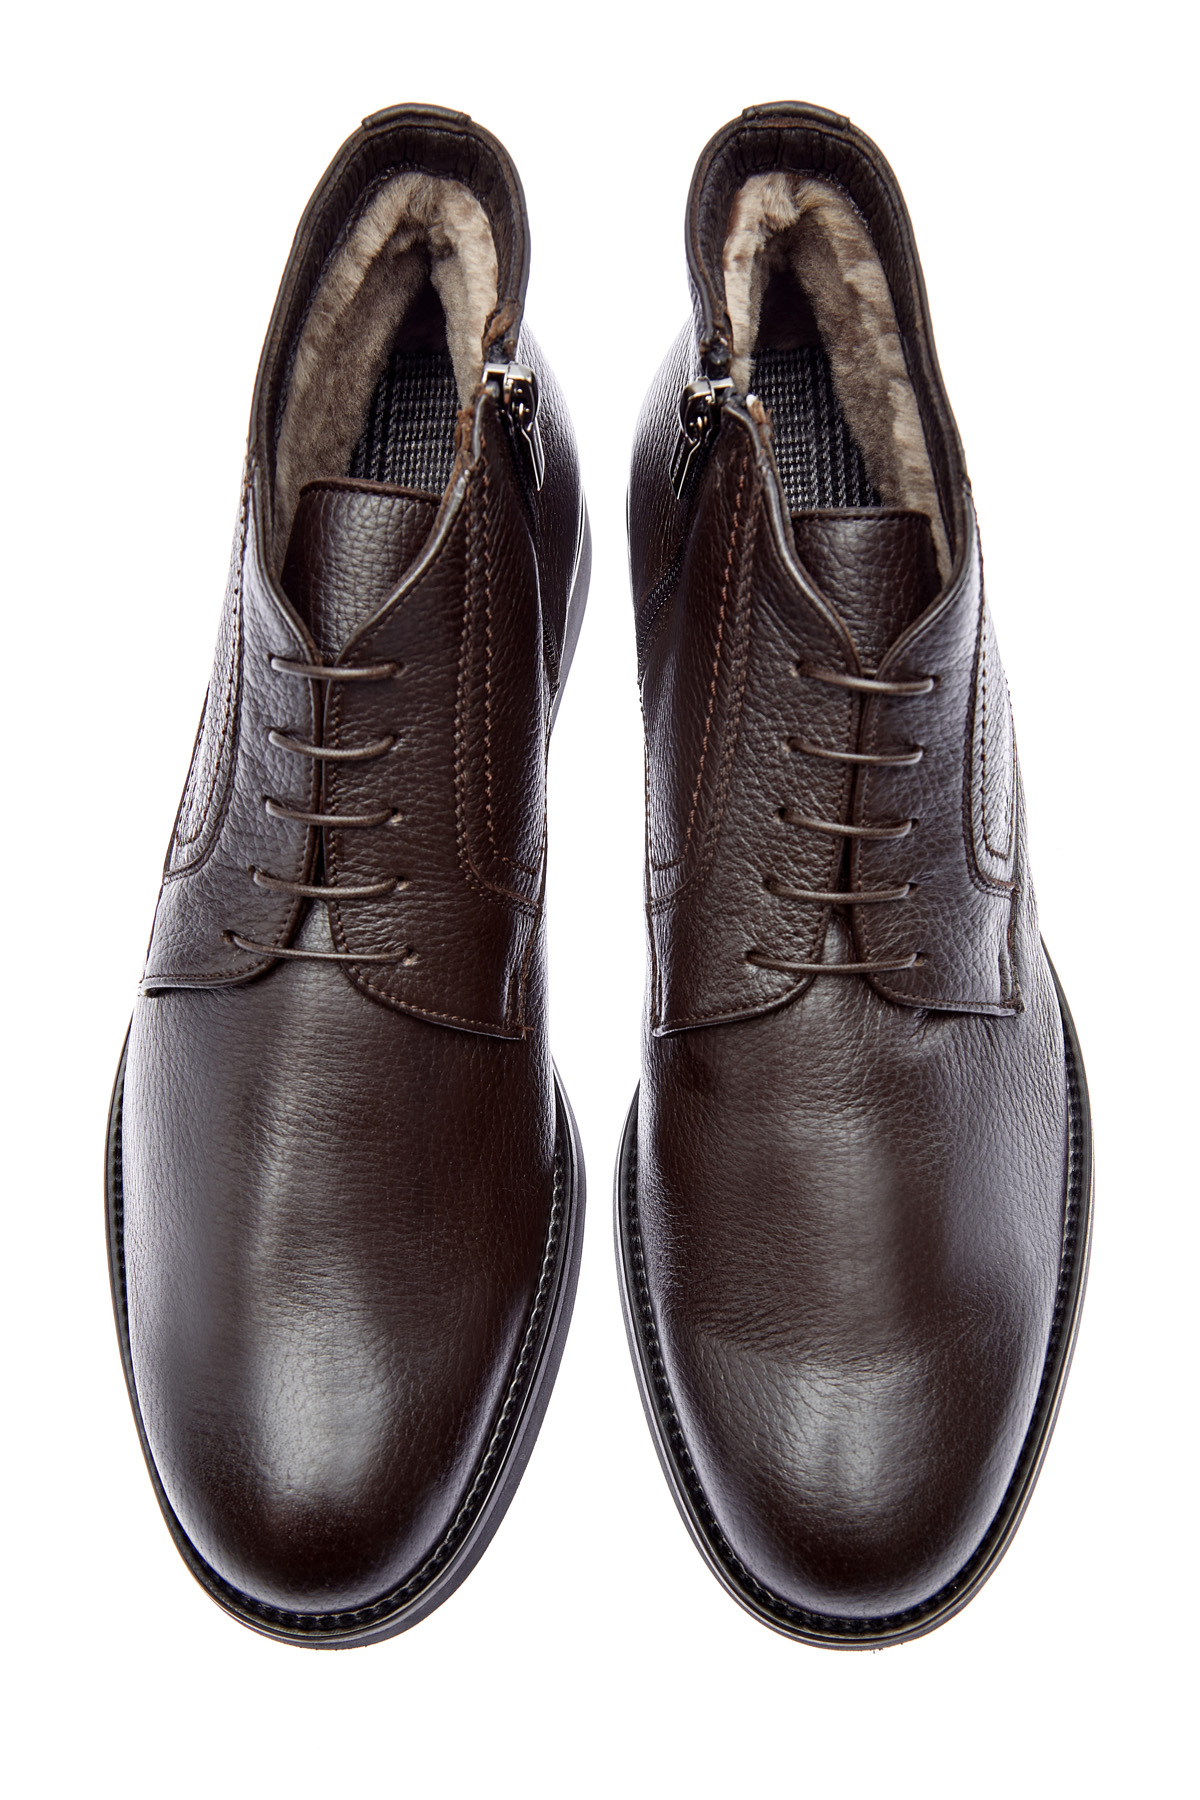 Высокие ботинки-дерби ручной работы из кожи оленя MORESCHI, цвет коричневый, размер 42.5;43;43.5 - фото 5